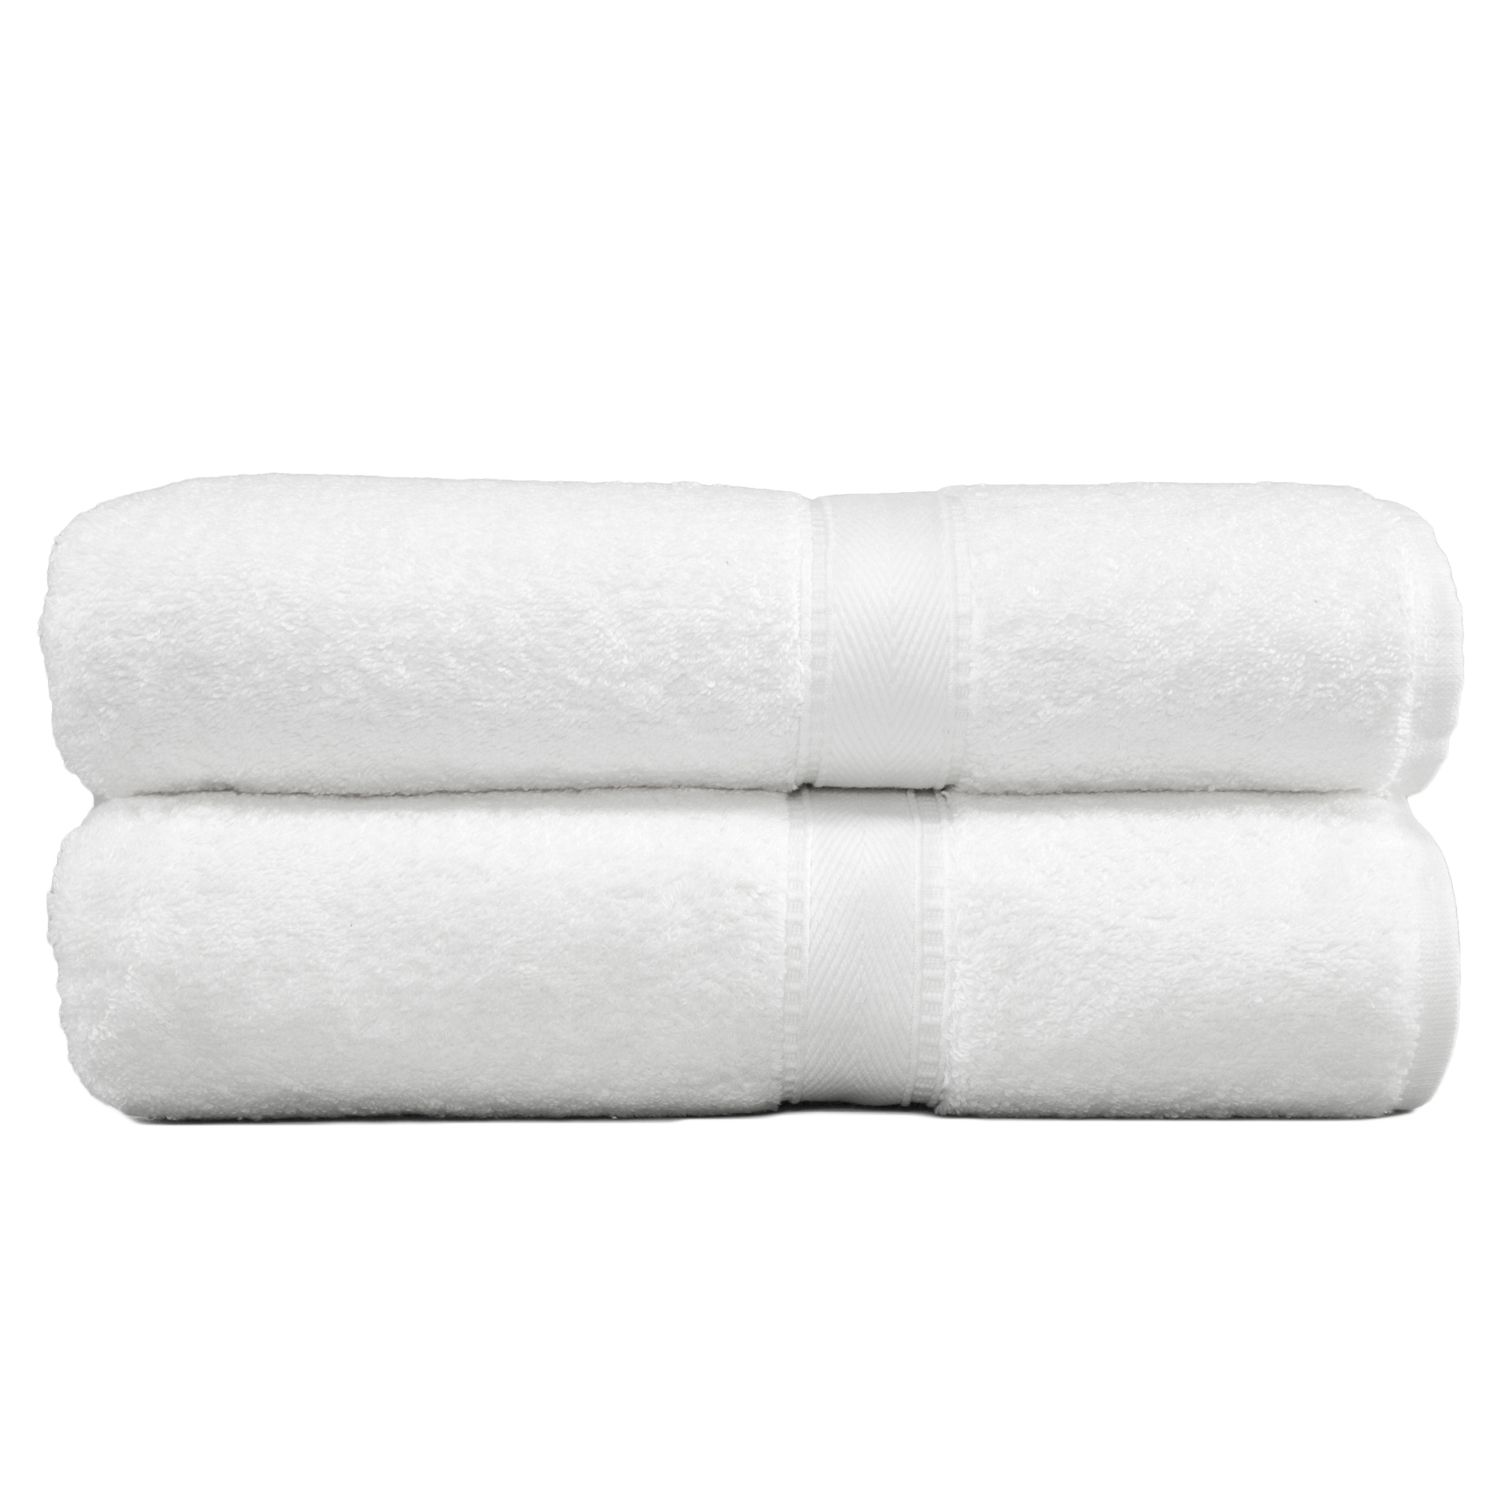 Линум Текстиль для дома Терри 2-уп. Банные полотенца